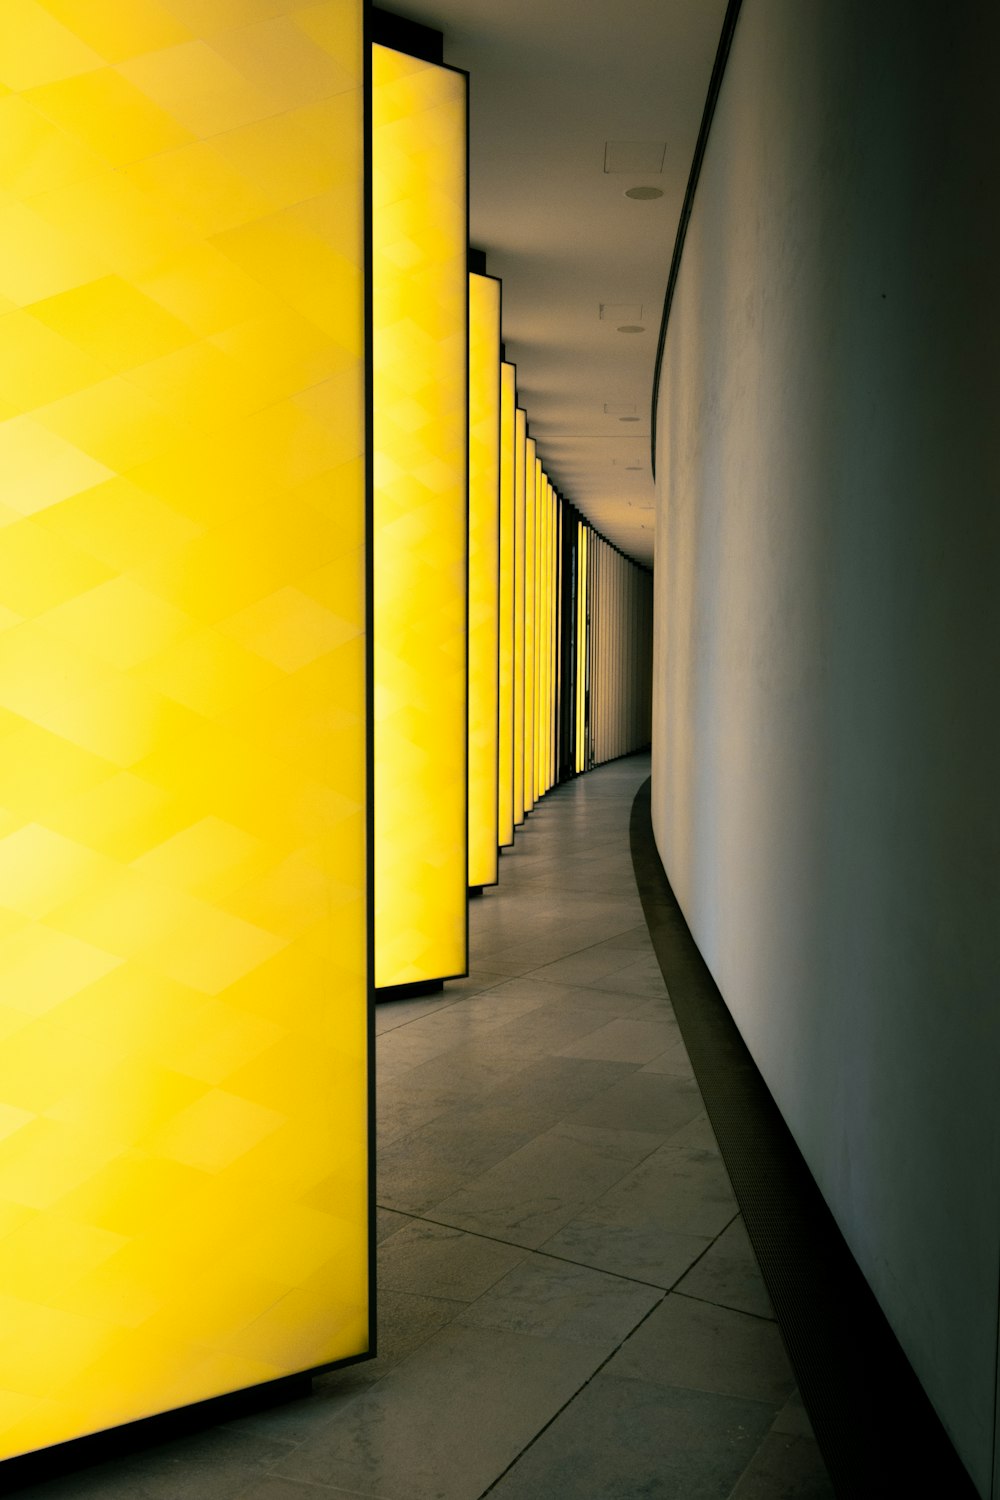 un long couloir bordé de lumières jaunes les unes à côté des autres